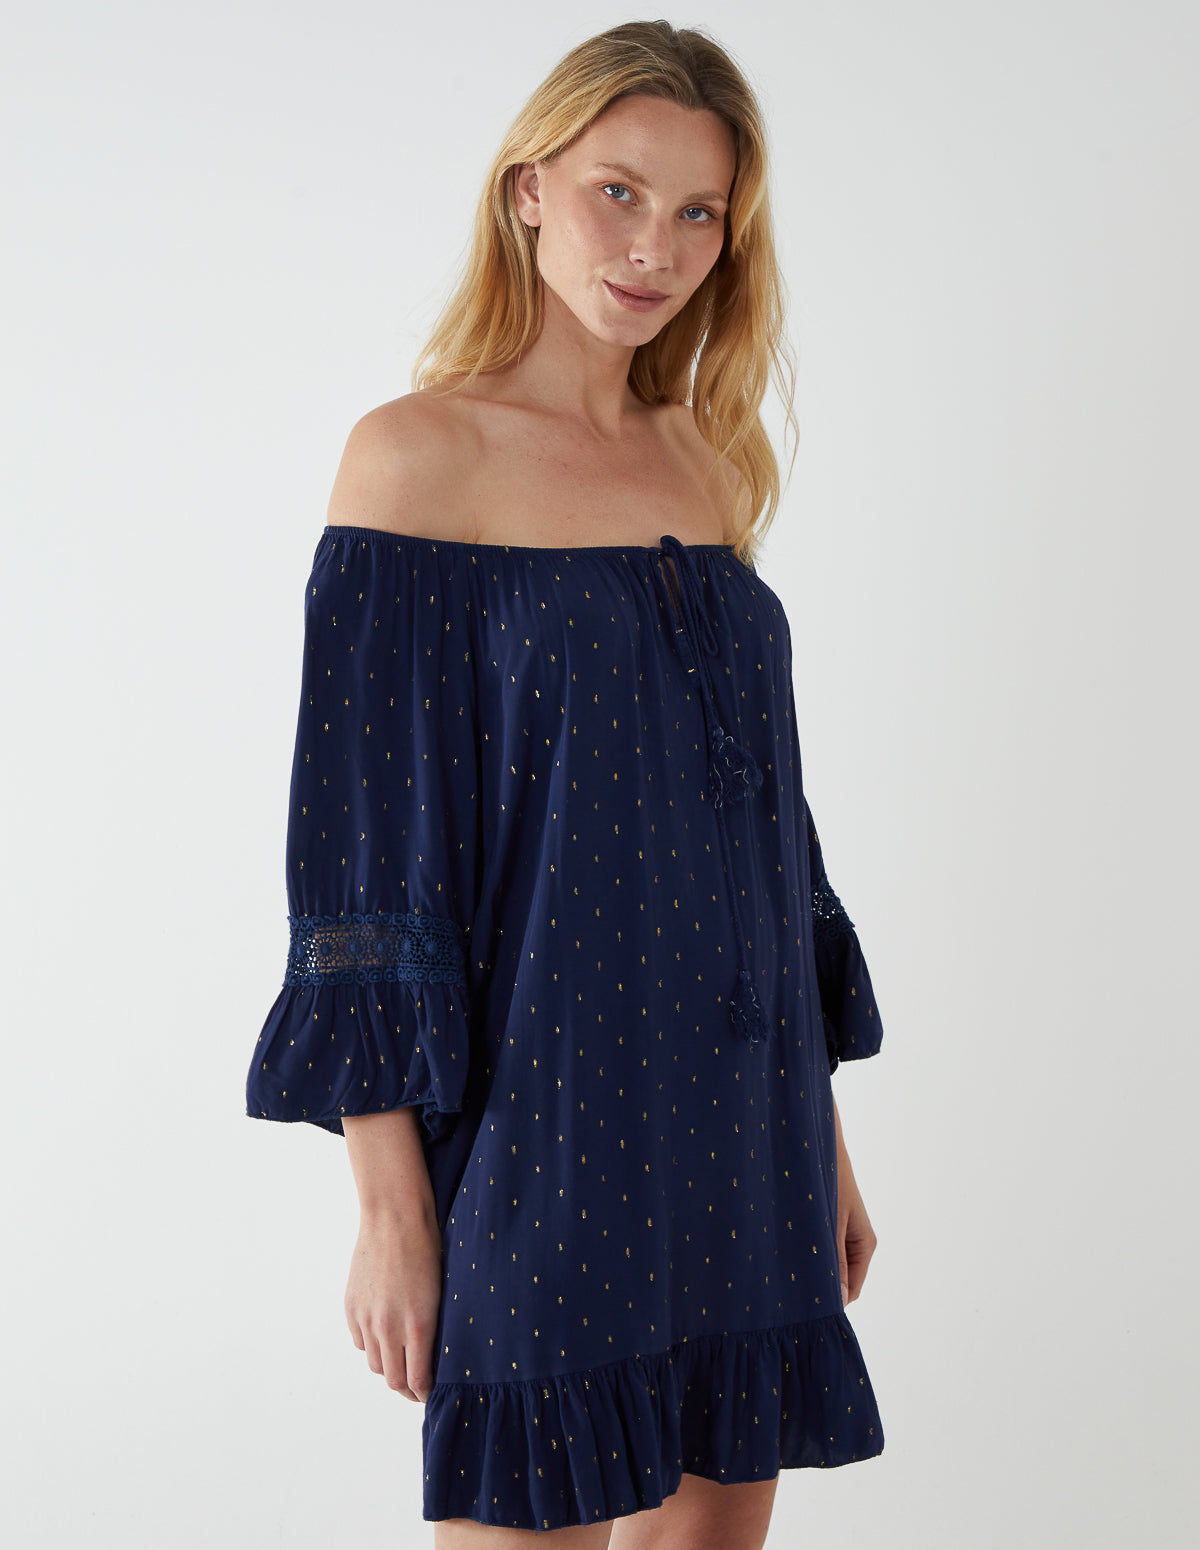 ANNALISA - Crochet Sleeve Detail Dress 